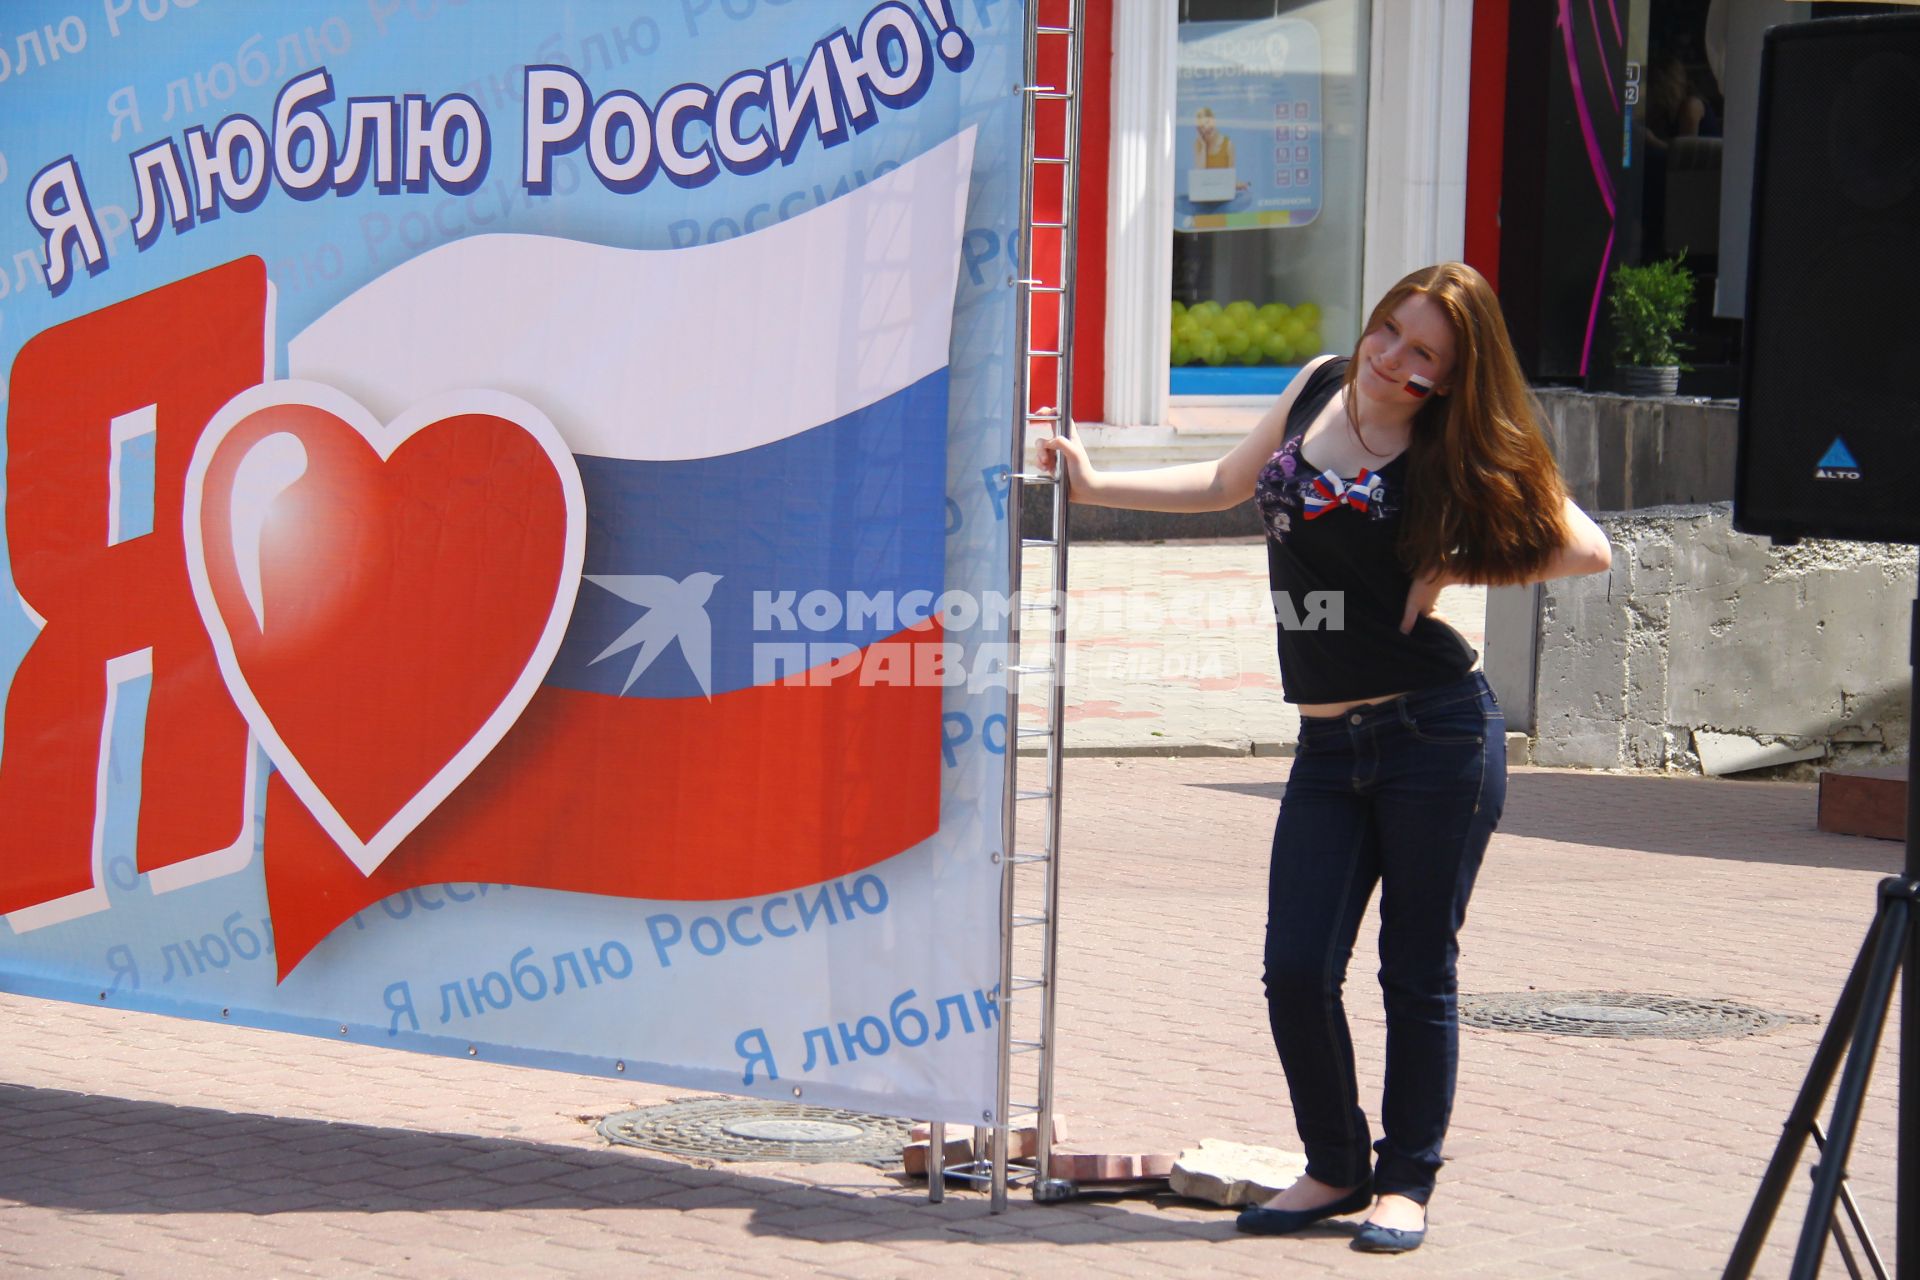 Люди отмечают праздник День России в Нижнем Новгороде. Девушка стоит на фоне плаката с надписью `Я люблю Россию!`.